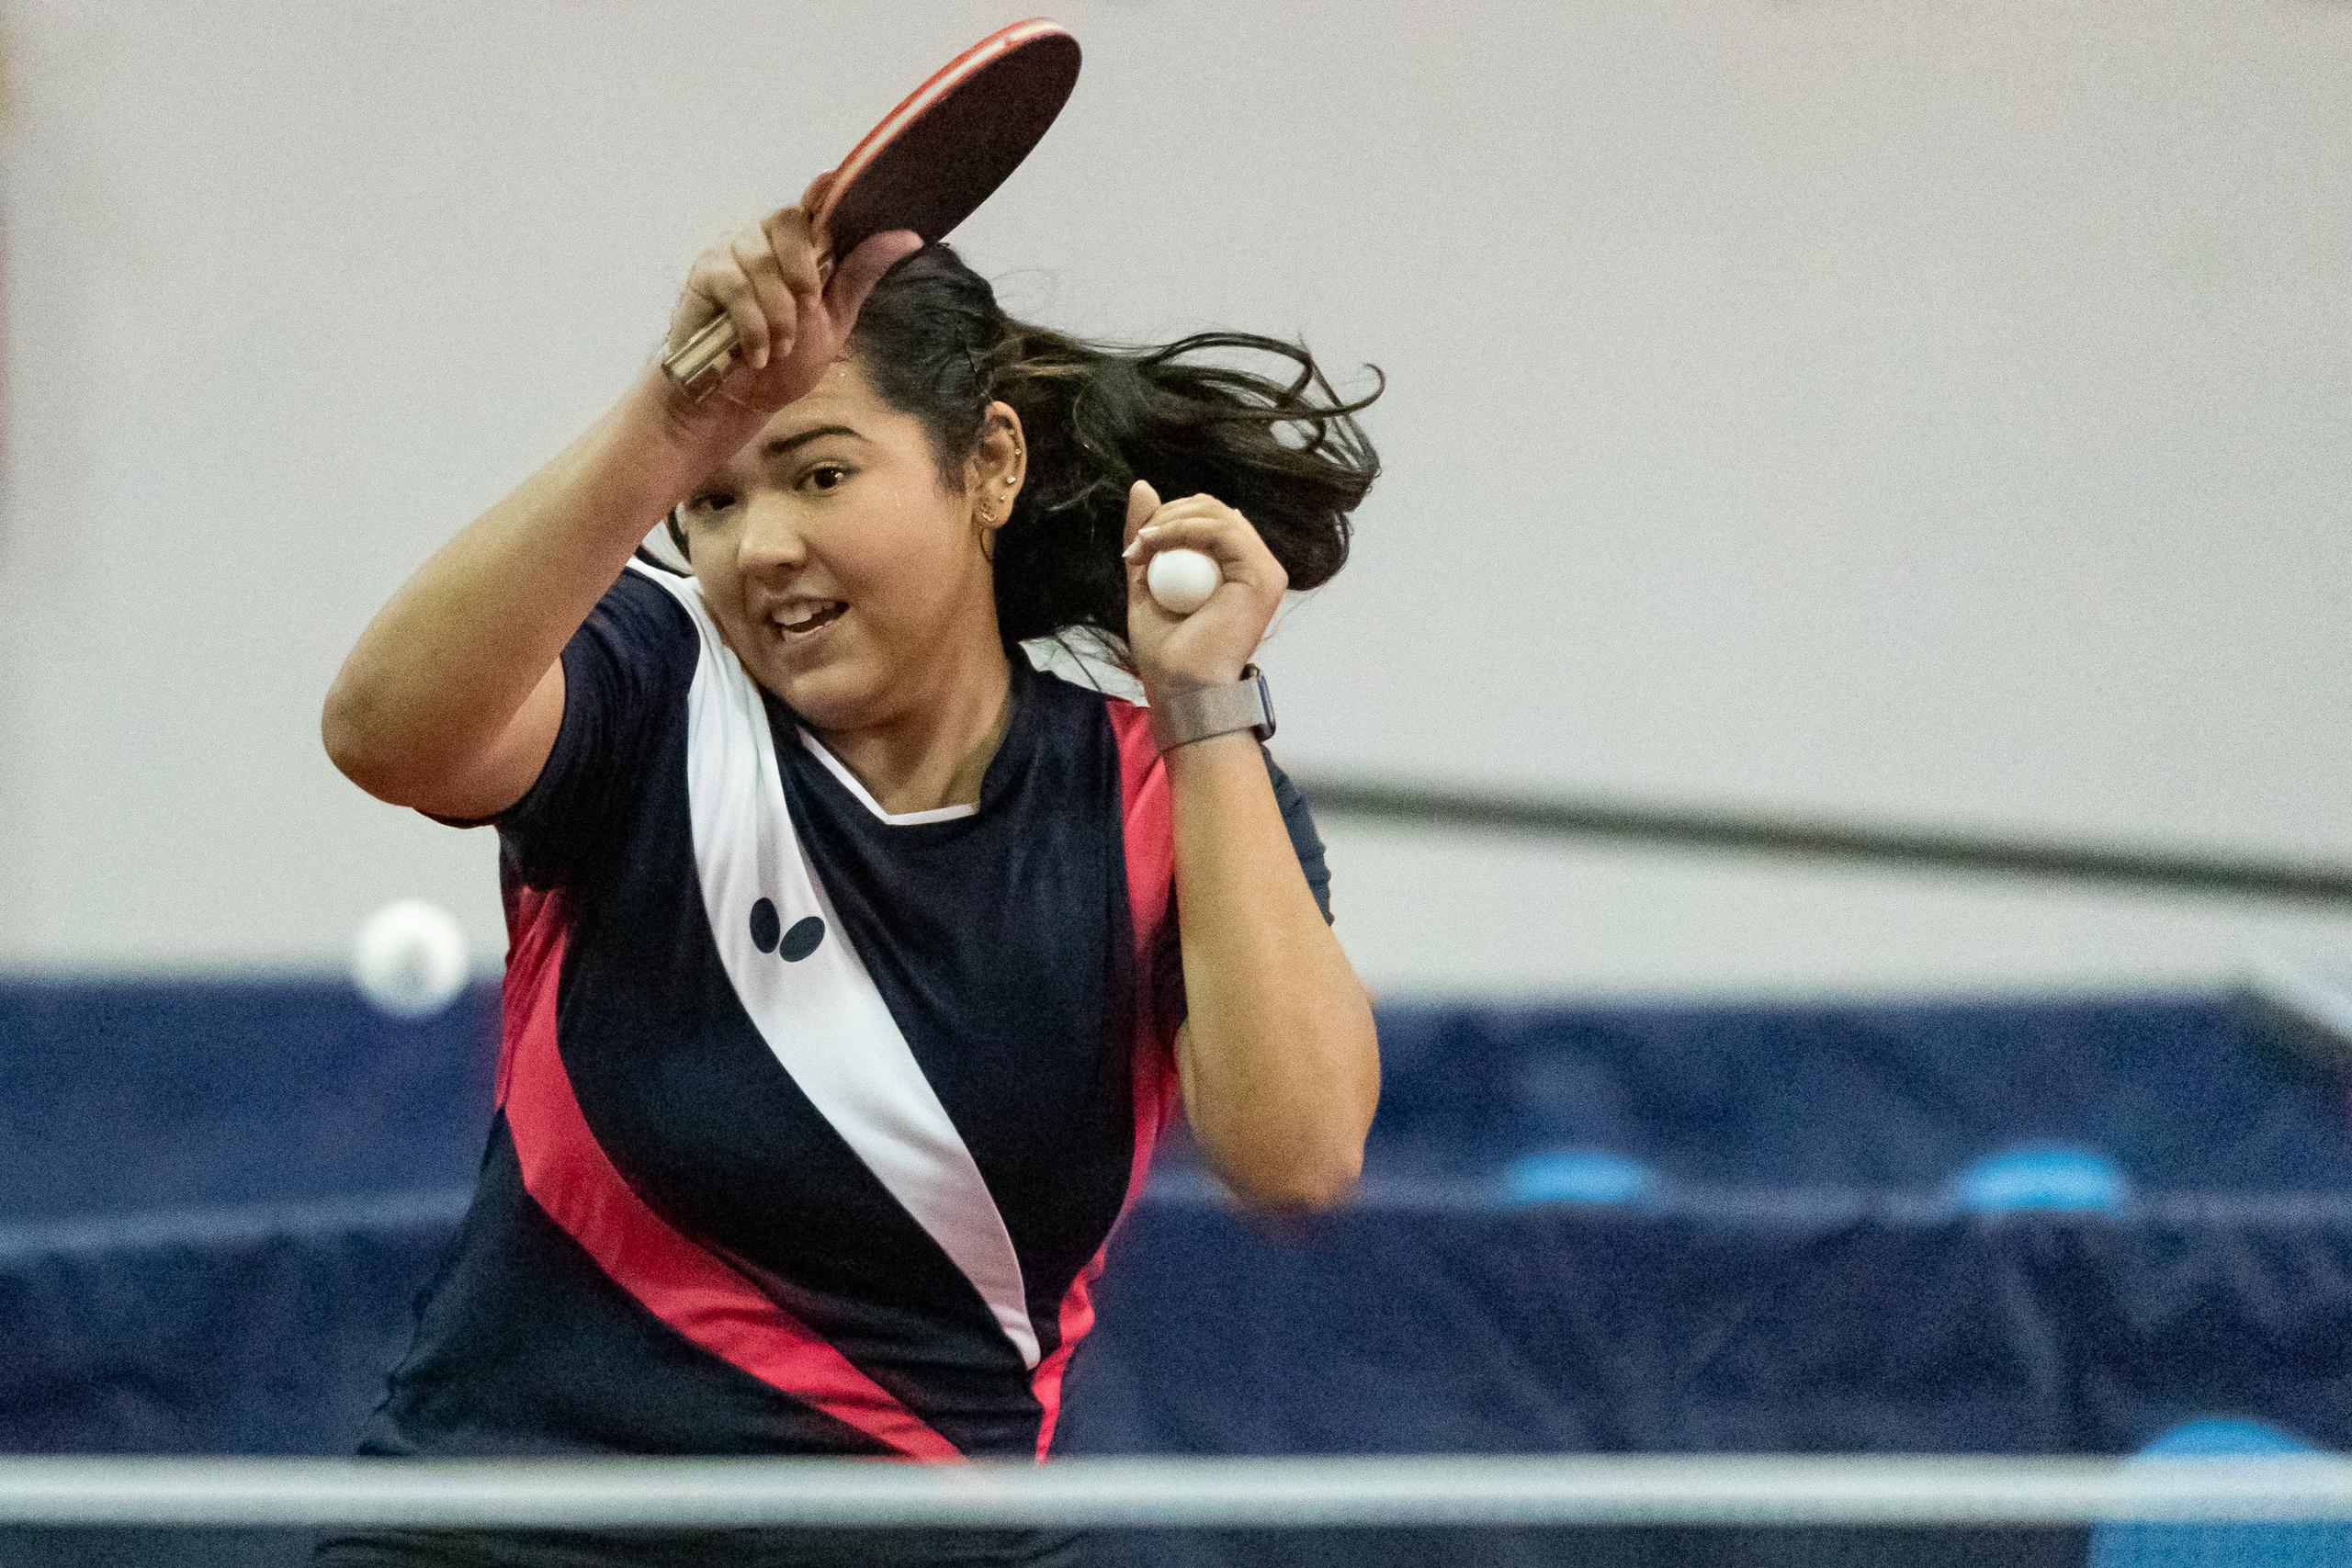 Adriana Díaz ascendió del 11mo al 90 puesto en el más reciente ranking de la ITTF. Es la primera caribeña y latinoamericana en llegar al Top 10 en la historia del tenis de mesa.